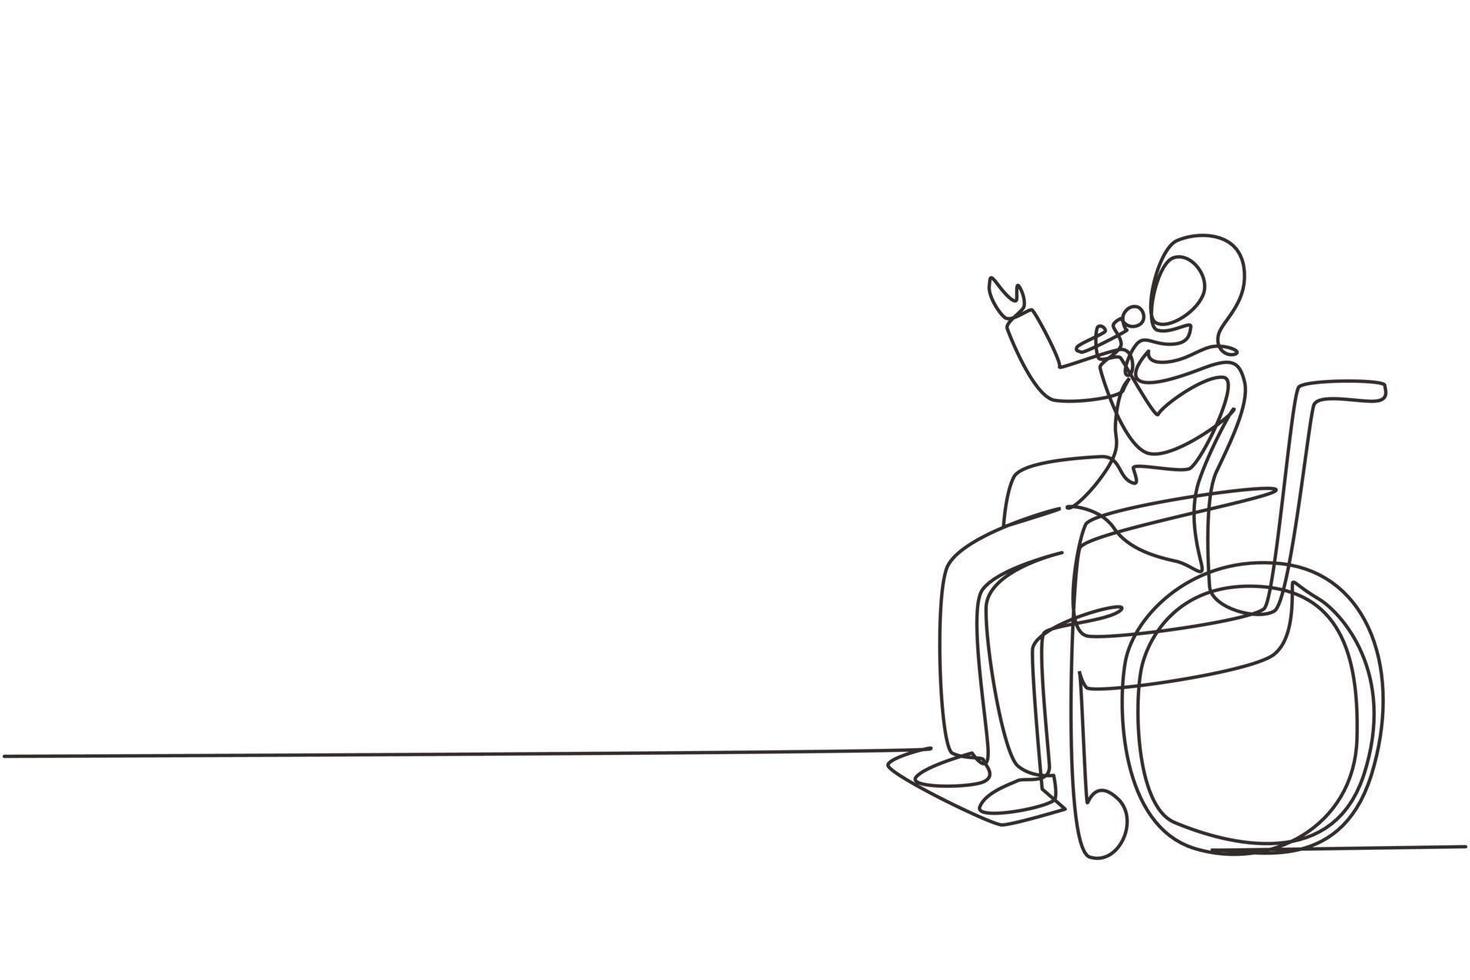 único desenho de linha contínua pessoa com deficiência curtindo a vida. mulher árabe sentada em cadeira de rodas cantando no karaokê. passar o tempo no local de lazer. uma linha desenhar ilustração em vetor design gráfico